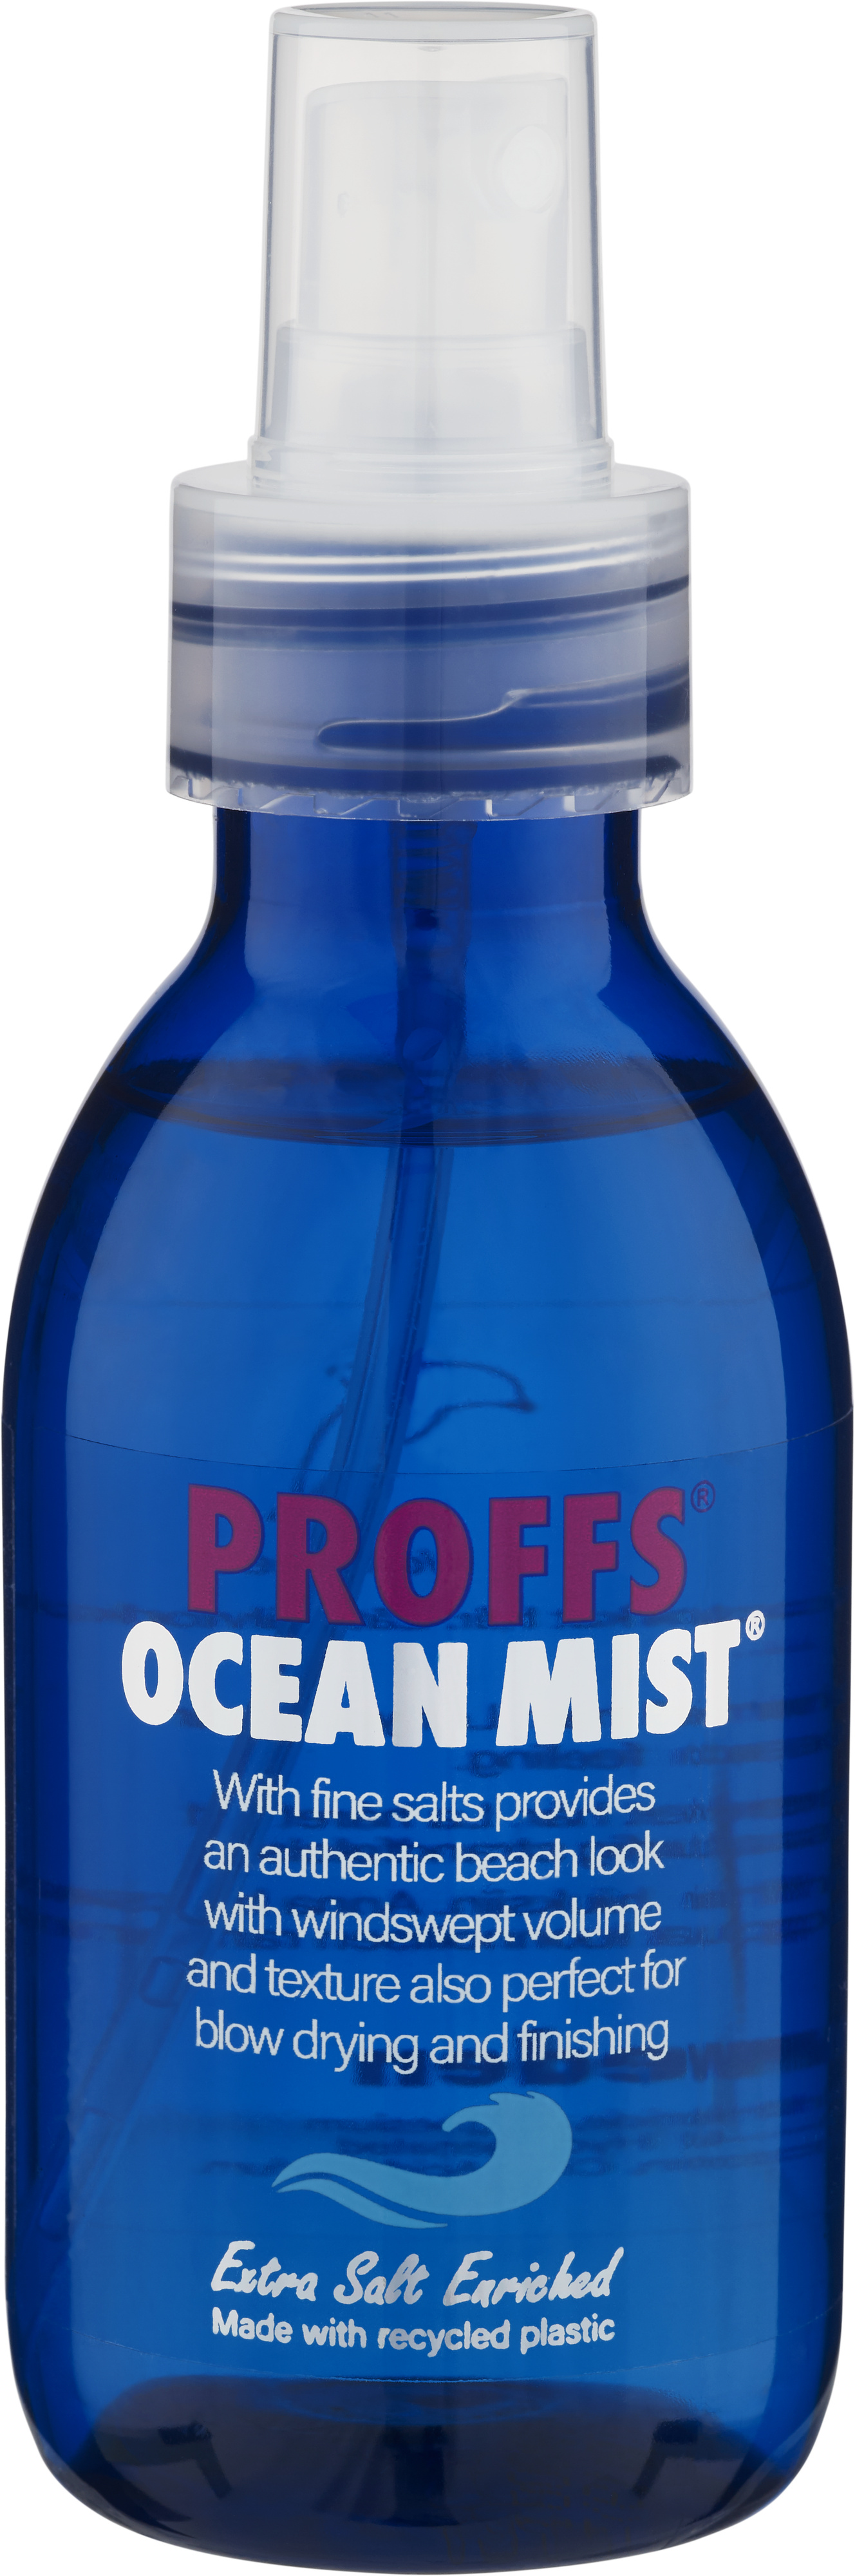 Proffs ocean mist 150 ml